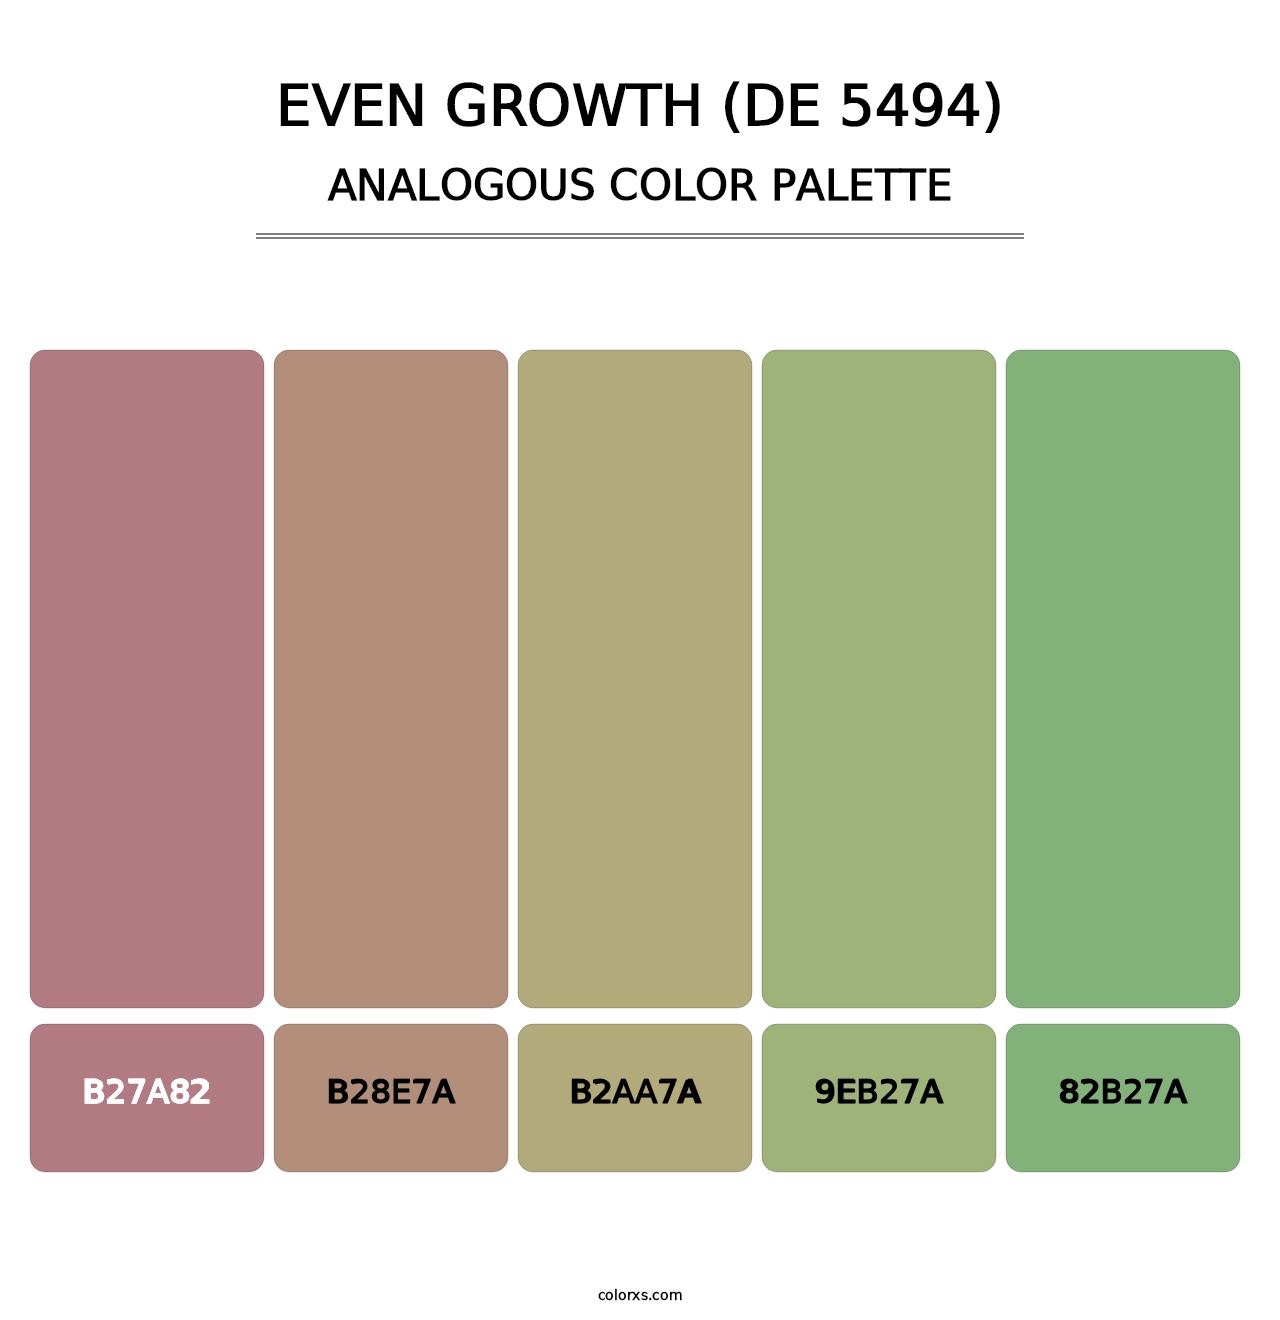 Even Growth (DE 5494) - Analogous Color Palette